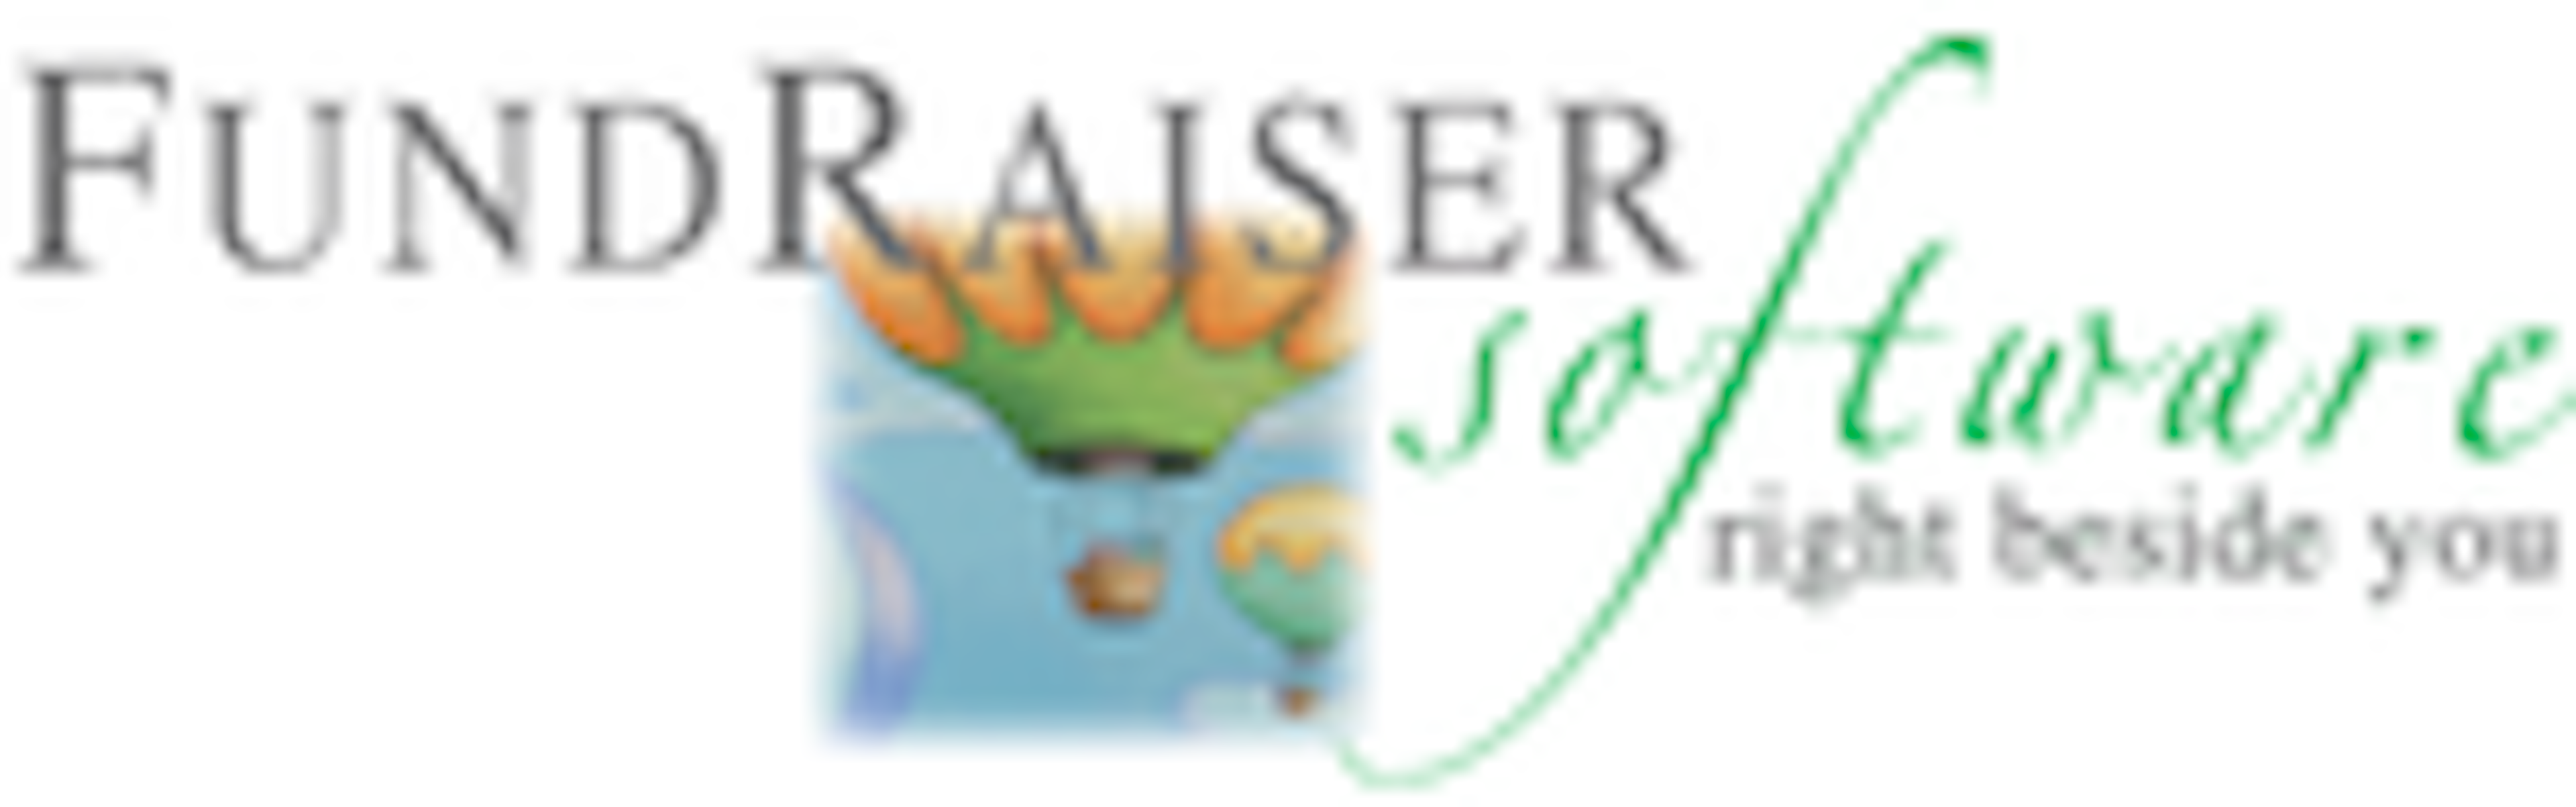 FundRaiser Logo